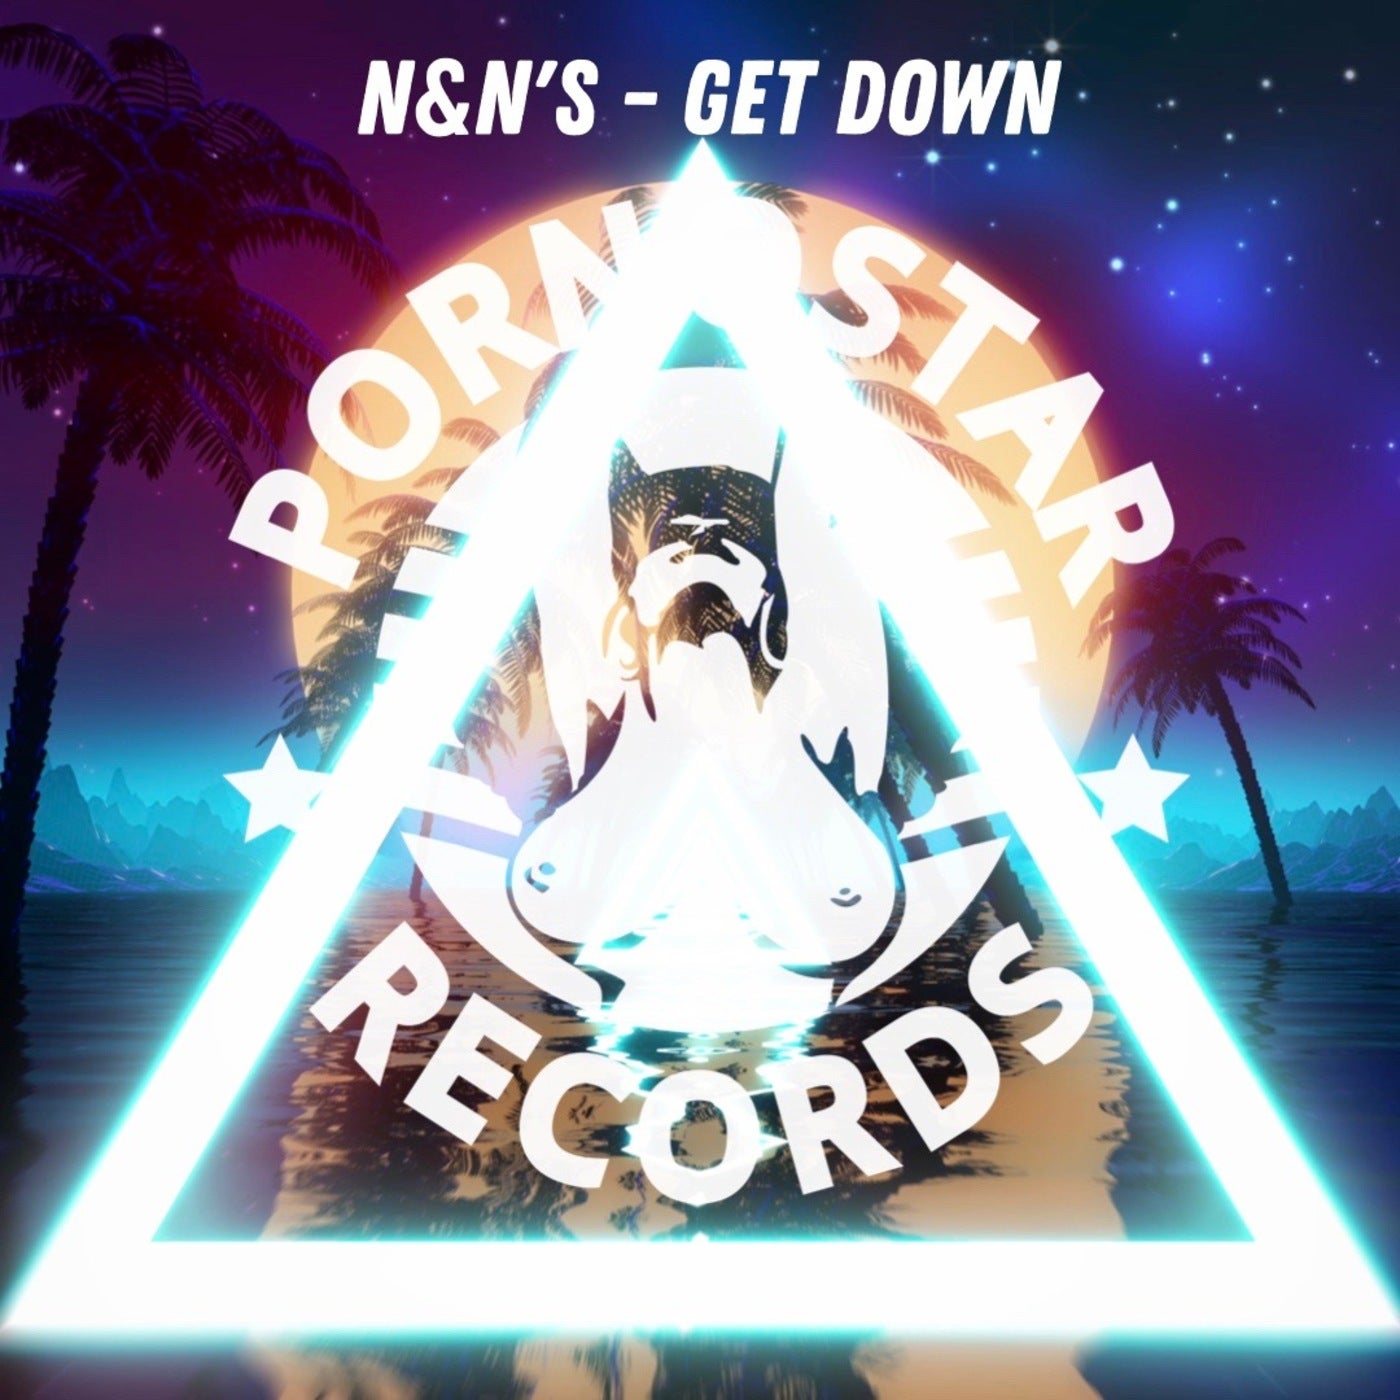 N&N's - Get Down